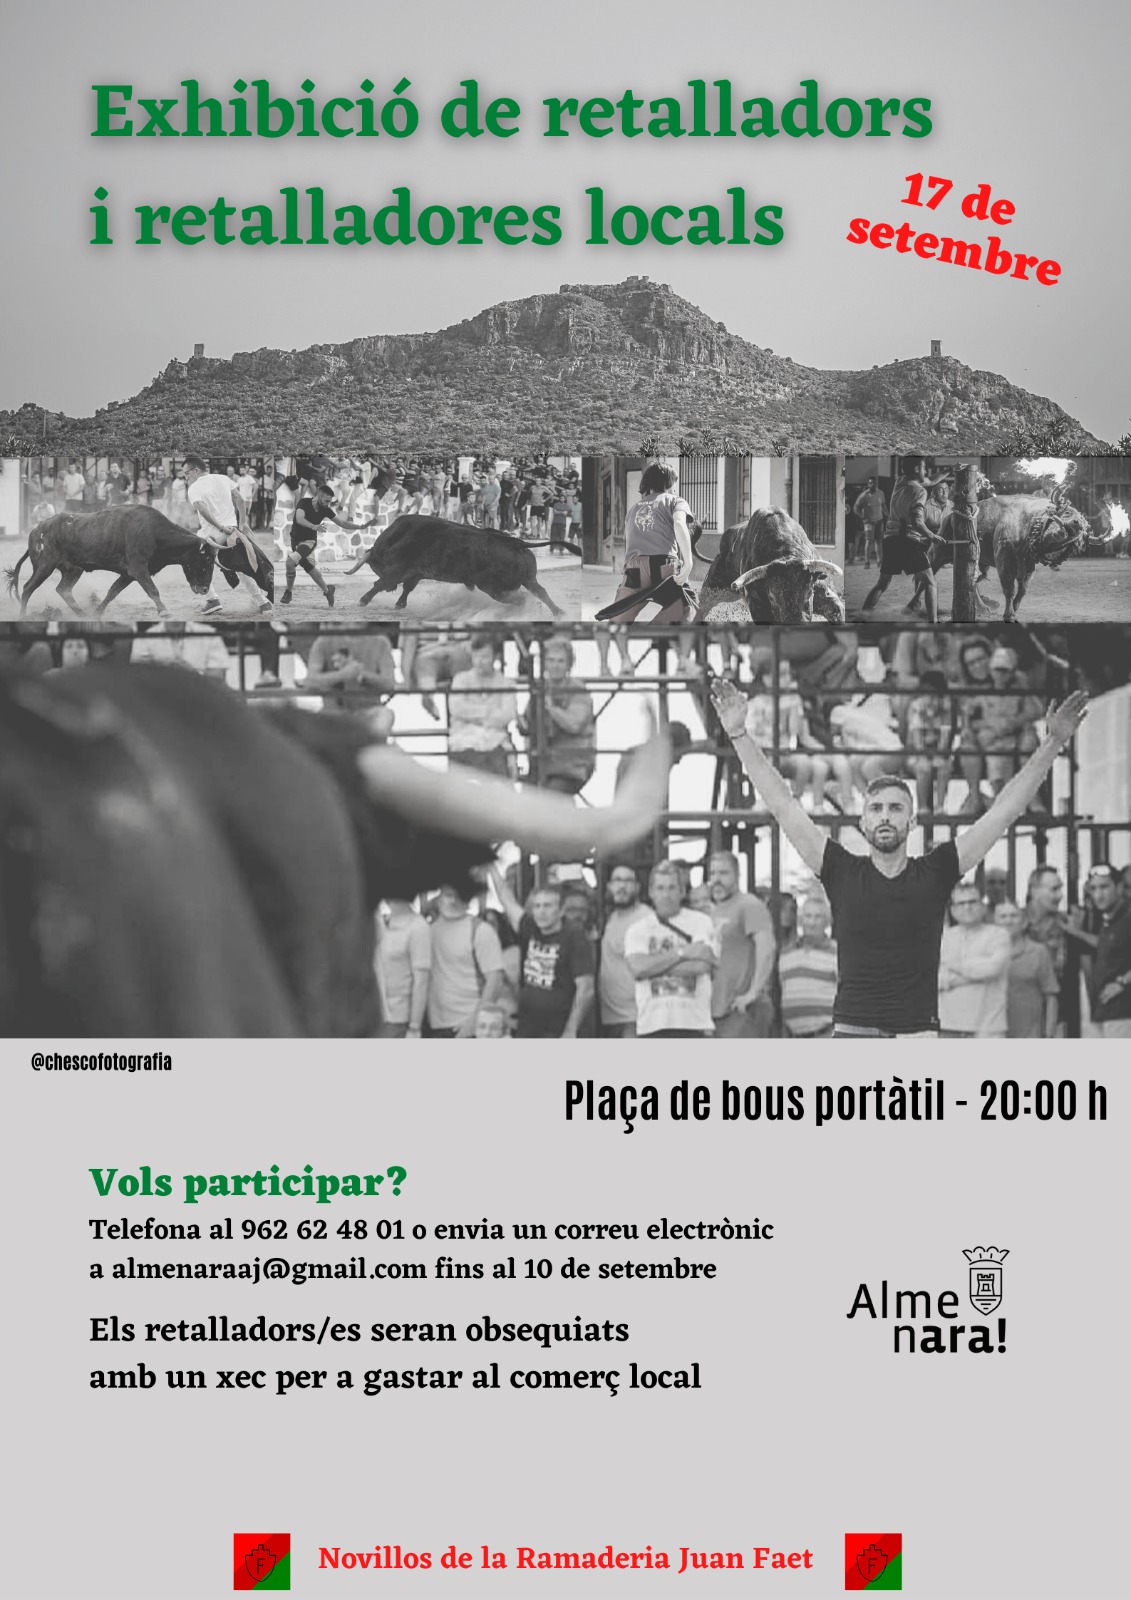 Almenara organizará una exhibición de recortadores y recortadoras locales en la plaza portátil del recinto ferial